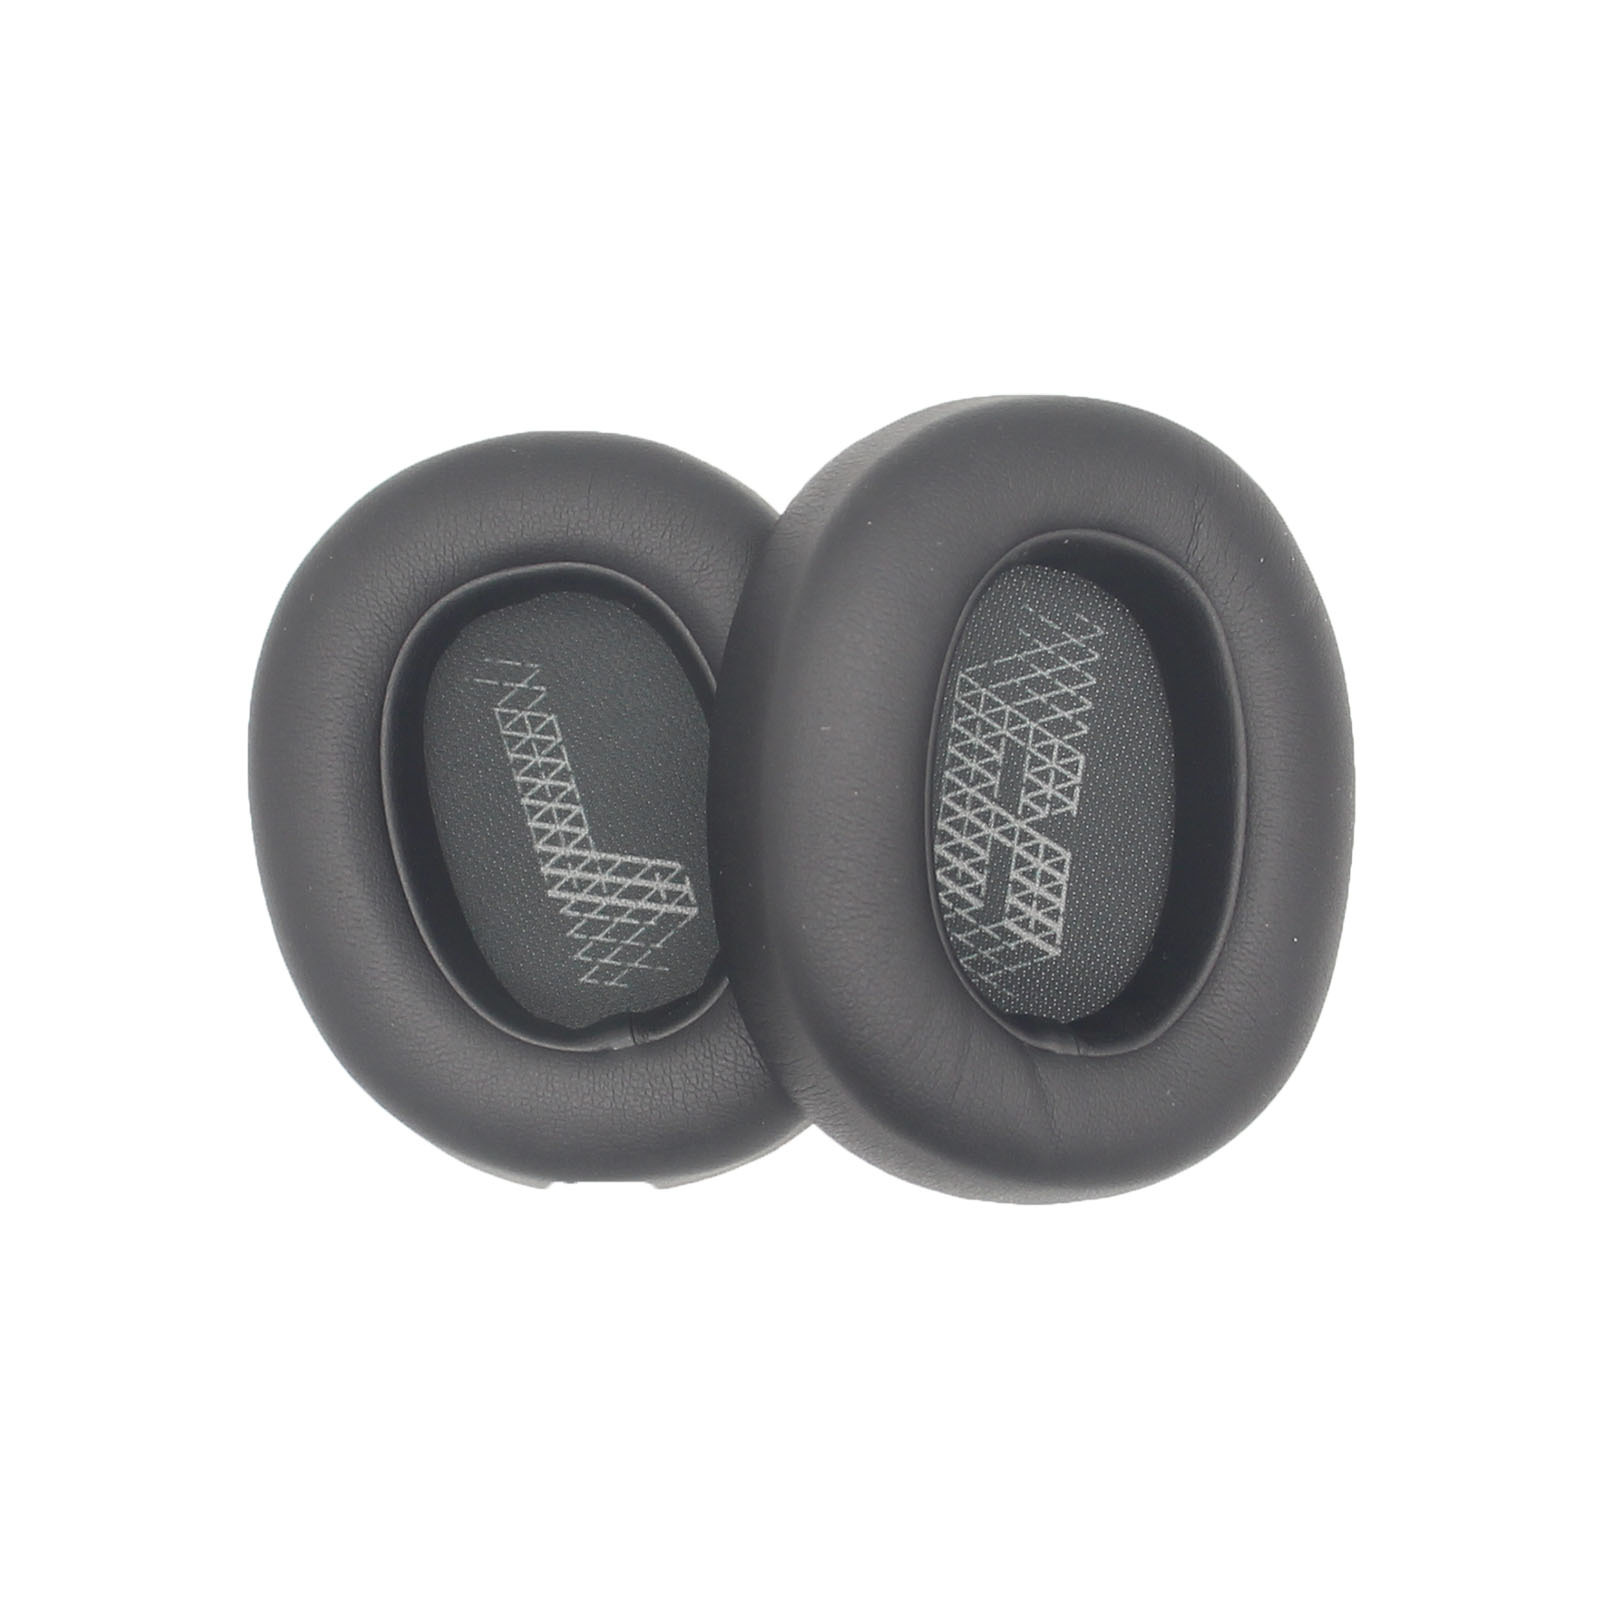 Black Replacement Earpads Ear Cushion Pads For JBL Lifestyle E65BTNC Live 650BTNC Tune 660BTNC Duet NC Noise-Cancelling Headphones  650BTNC